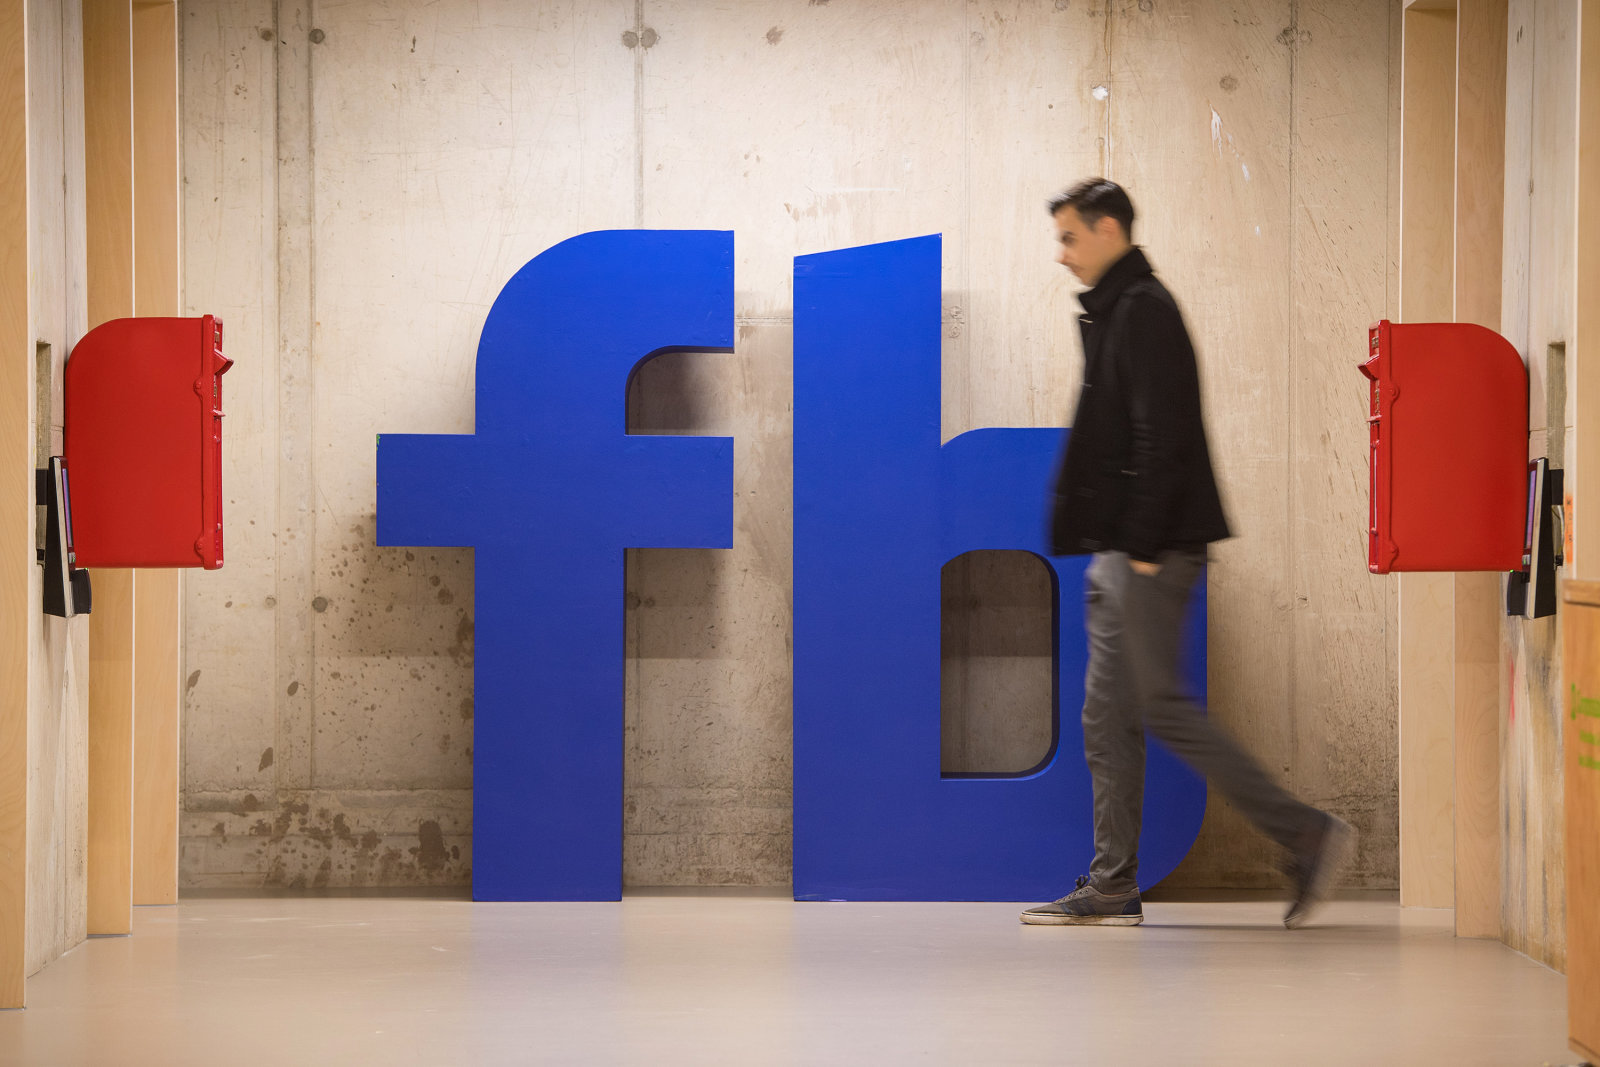 Facebook'un reklam engelleme önlemleri siyasi kampanyaları olumsuz etkiliyor